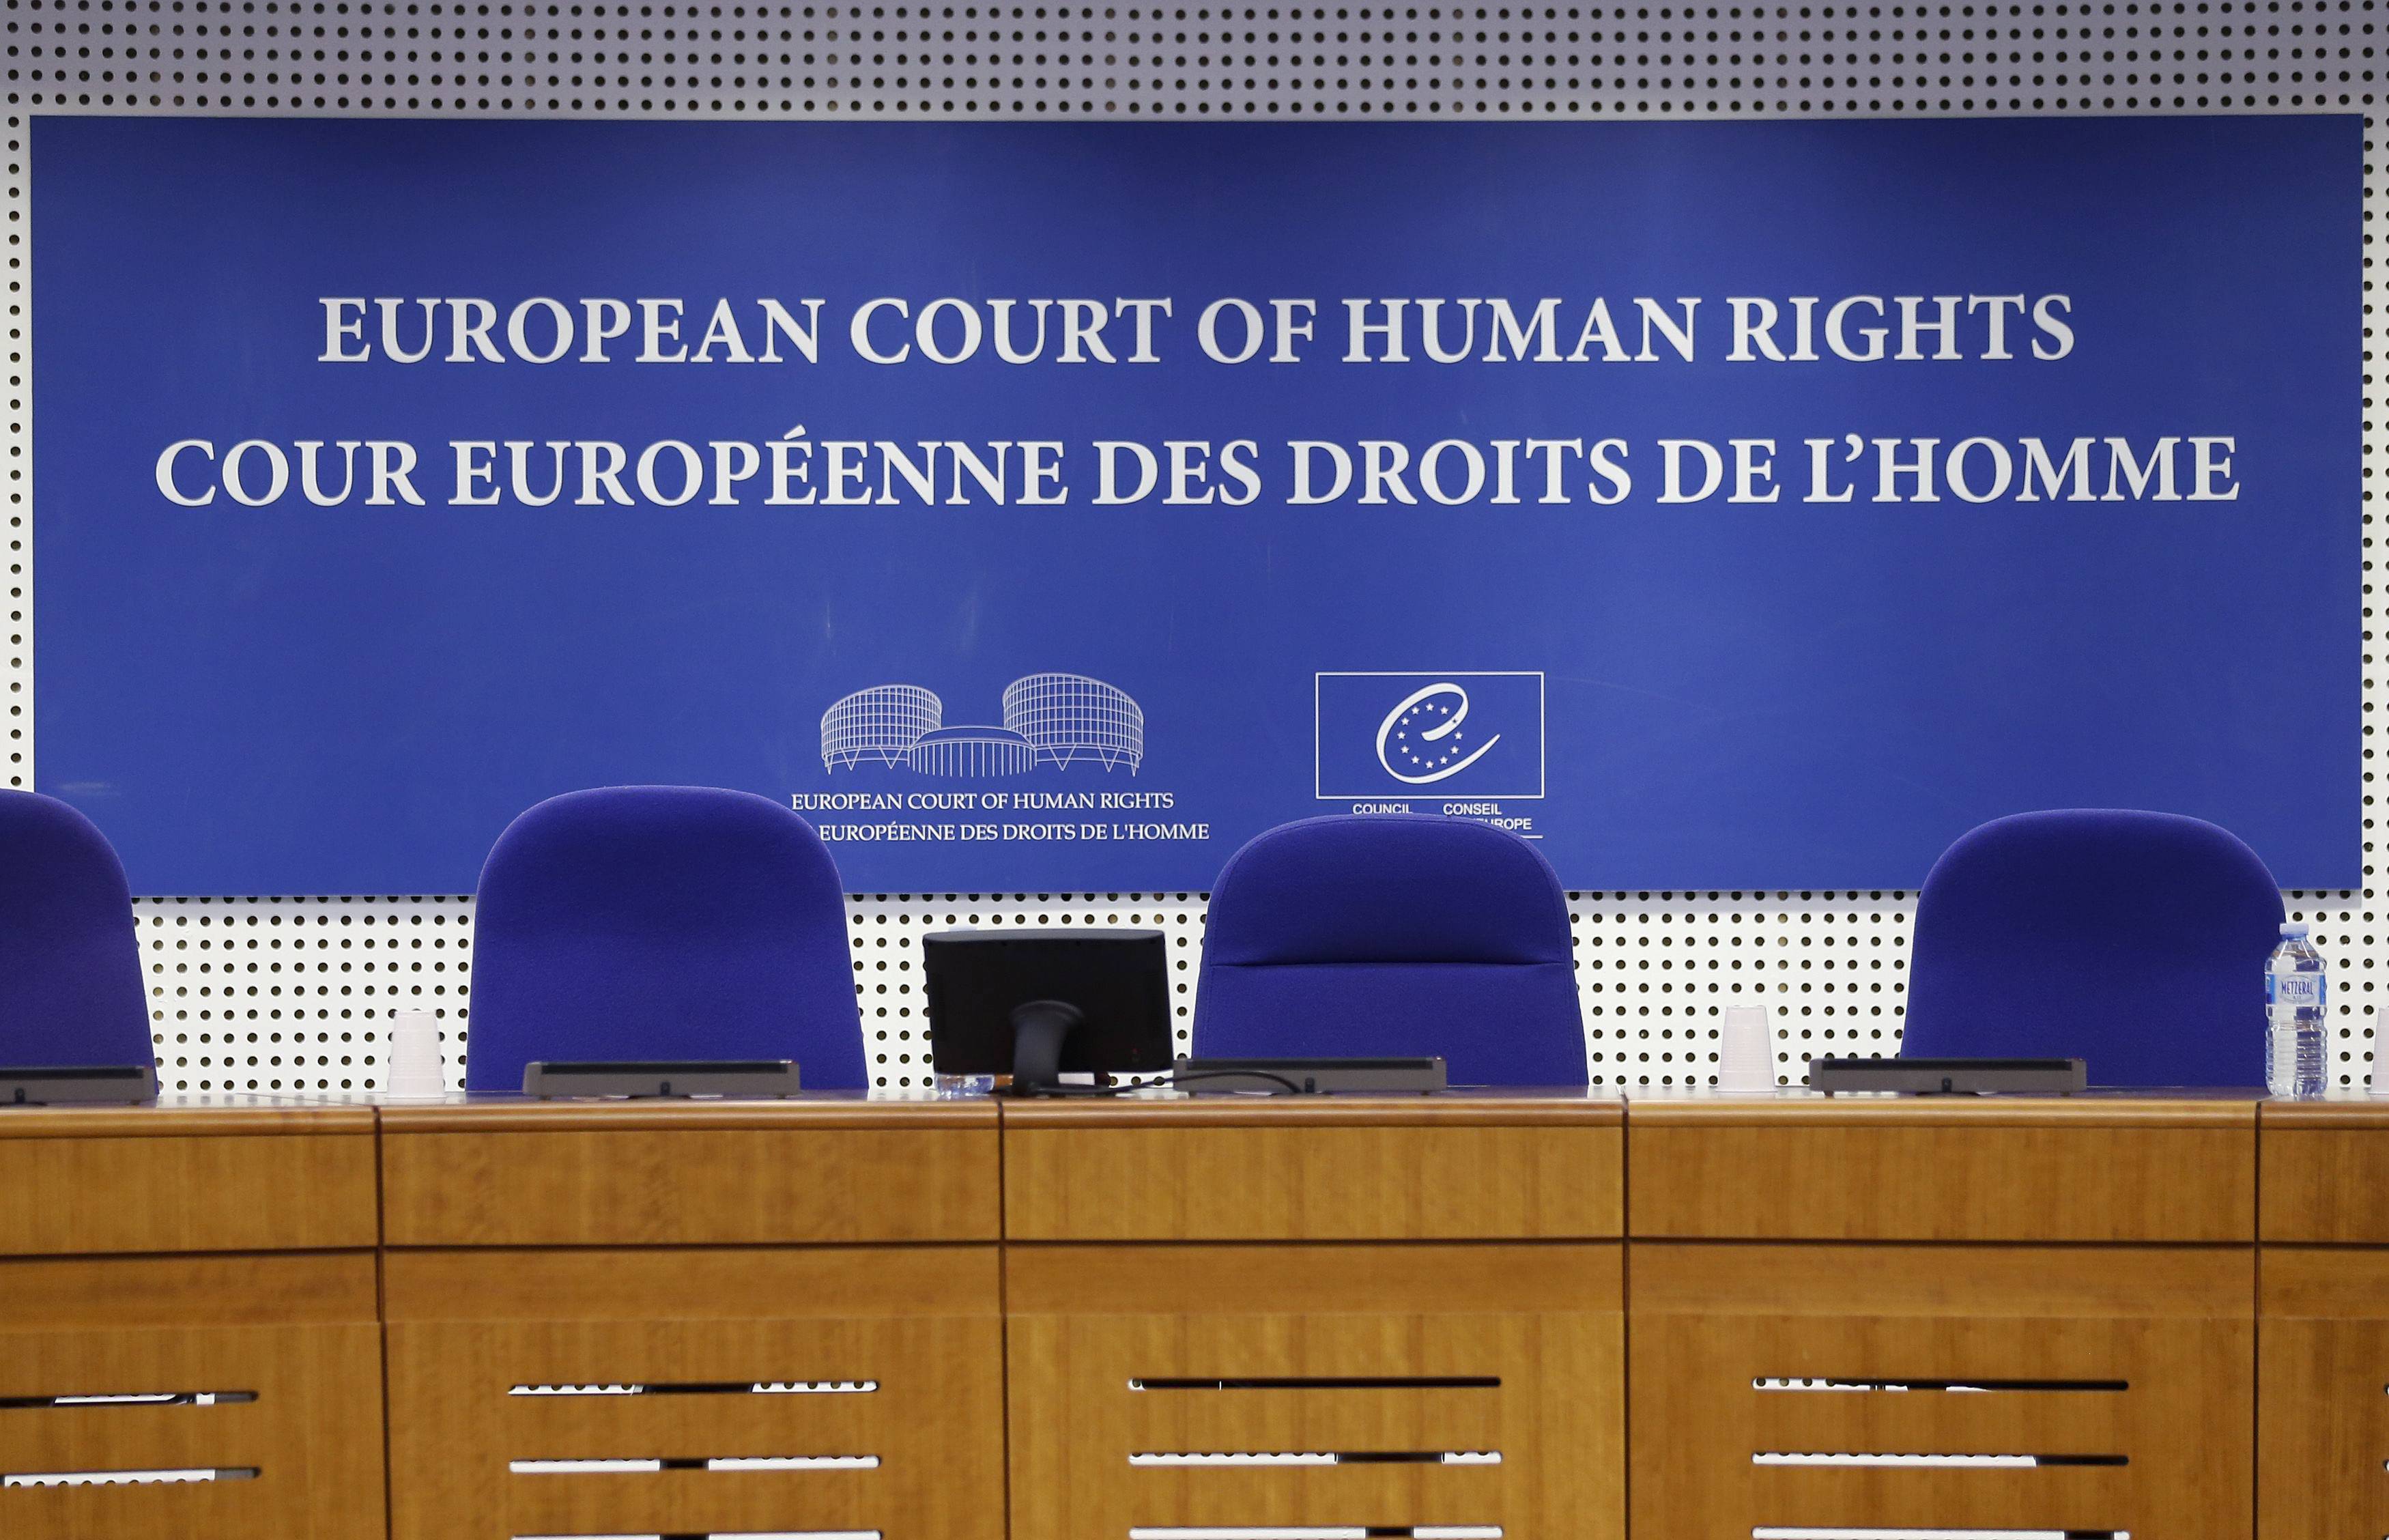 Le Parlement catalan saisie la Cour européenne des droits de l'homme (CEDH) contre Madrid